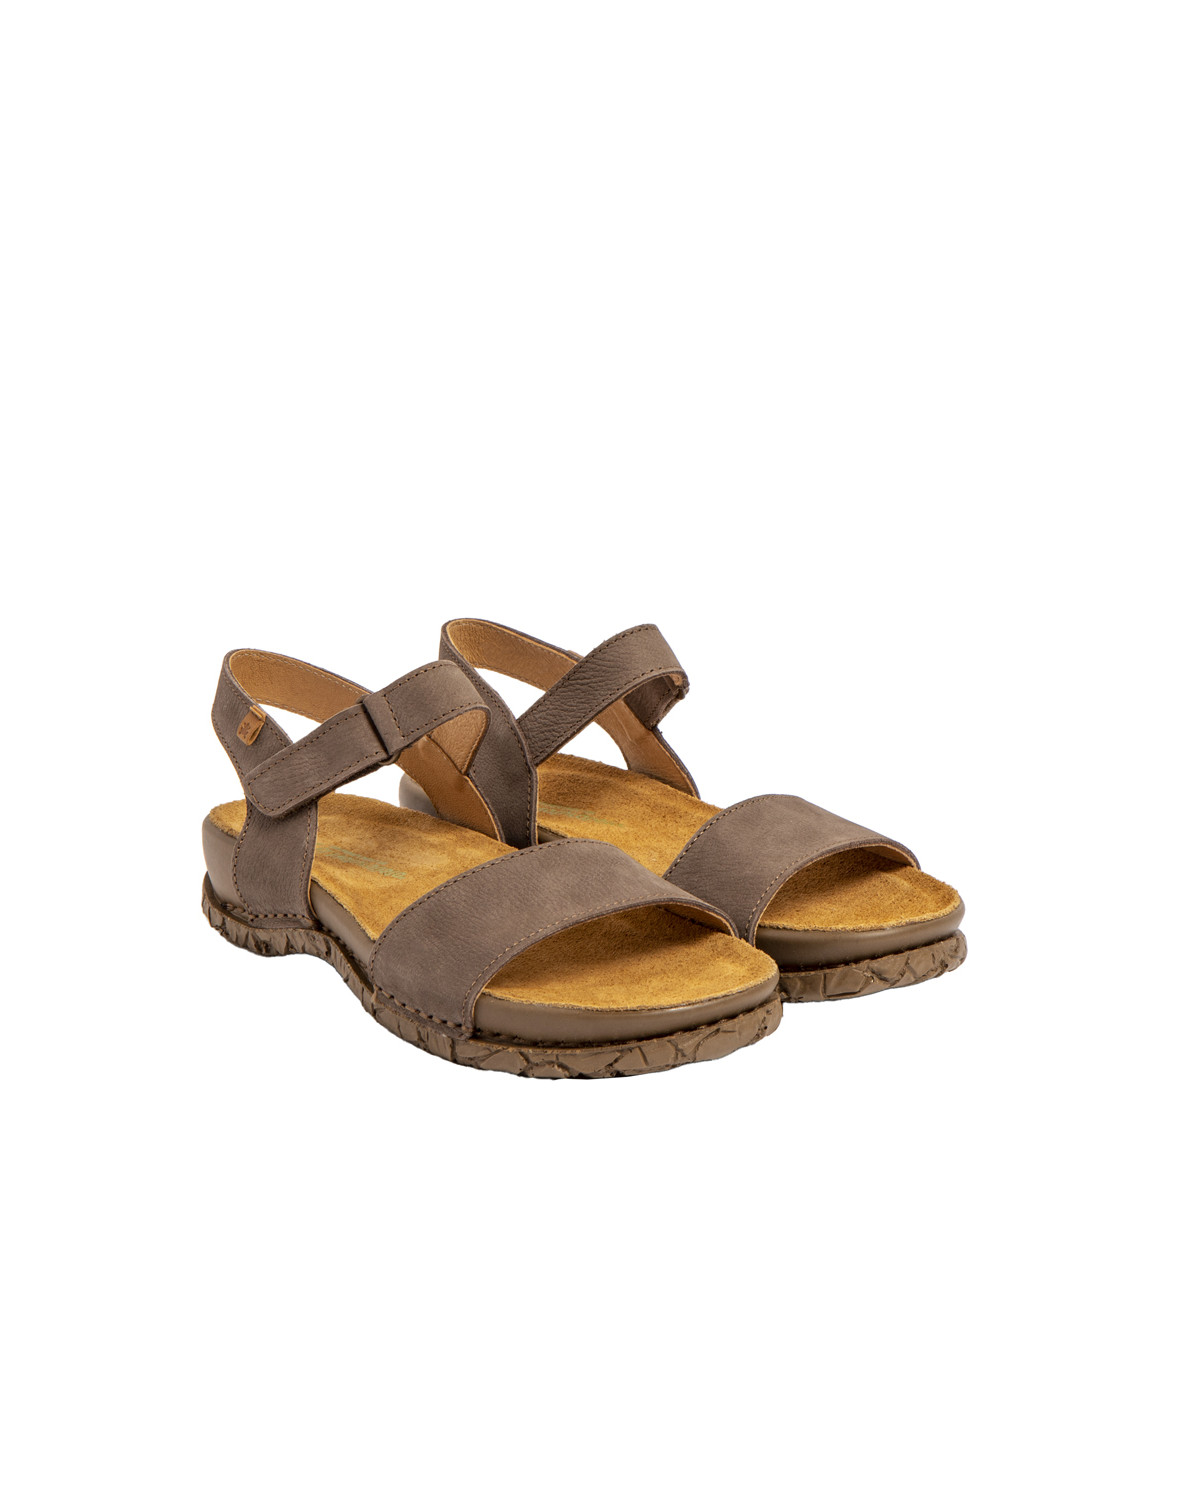 Sandales confortables plates en cuir à scratch et semelles ergonomique - Taupe - El naturalista